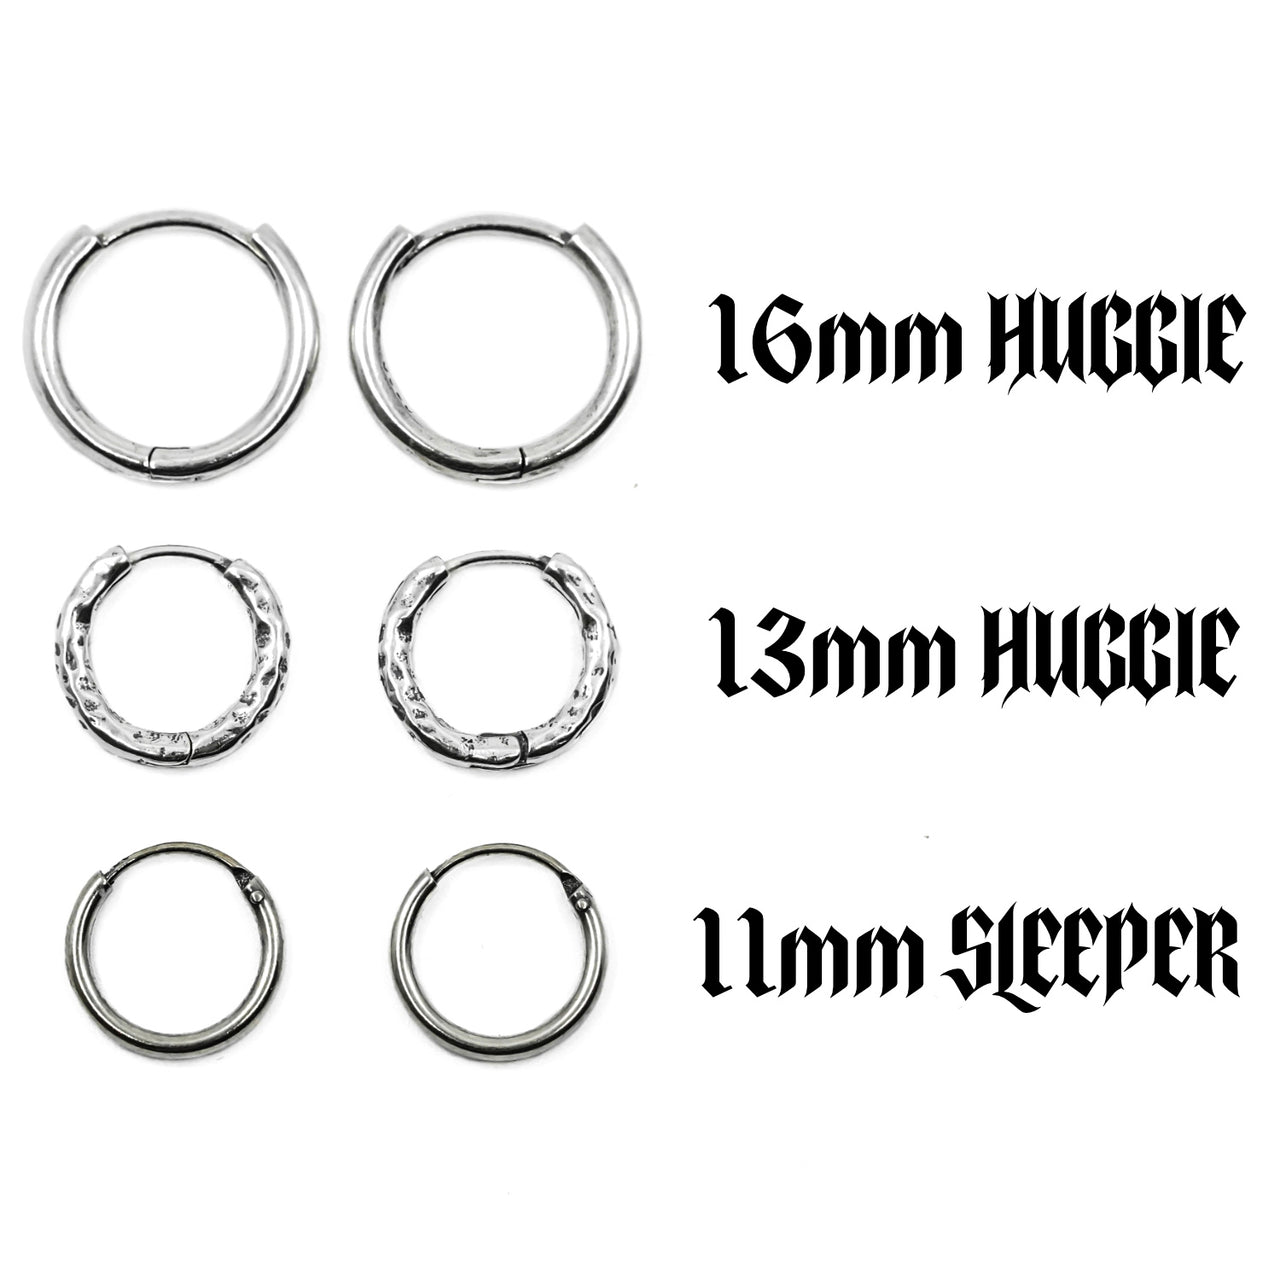 Different earring hoop options - sterling silver huggie and sleeper hoop